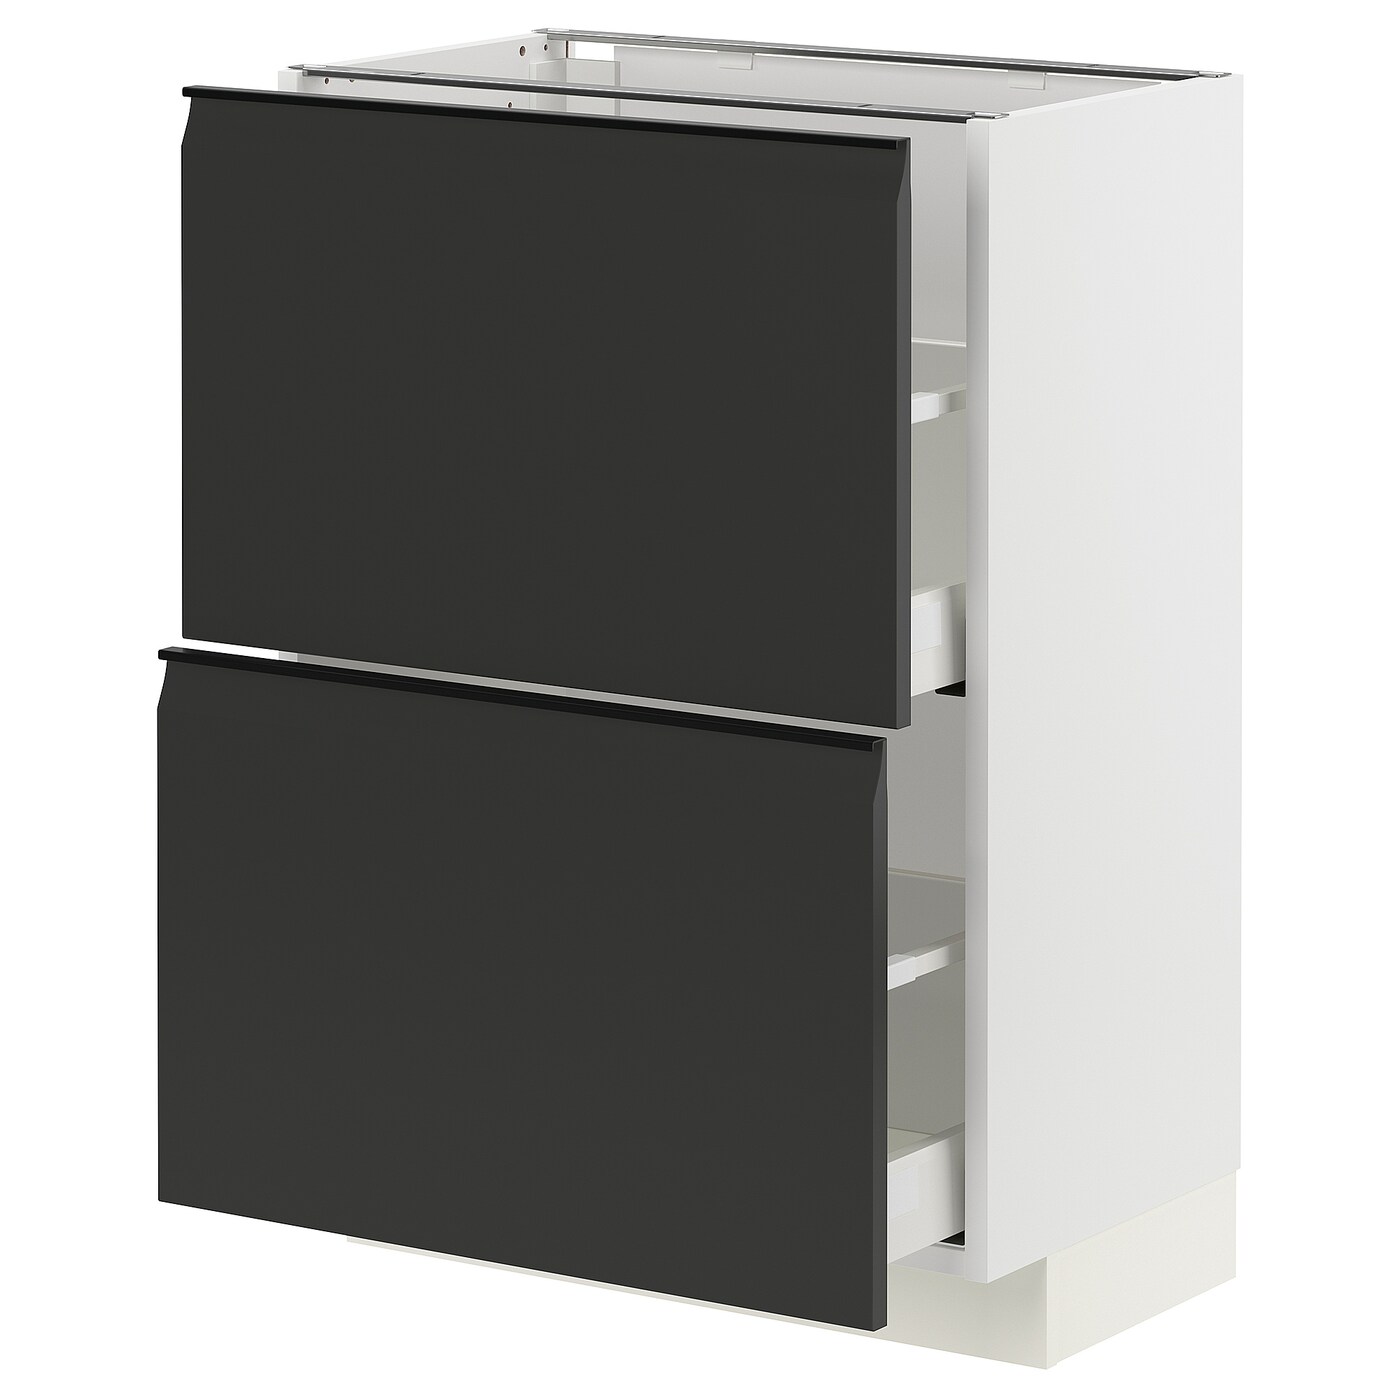 Напольный кухонный шкаф  - IKEA METOD MAXIMERA, 88x39x60см, белыйчерный, МЕТОД МАКСИМЕРА ИКЕА